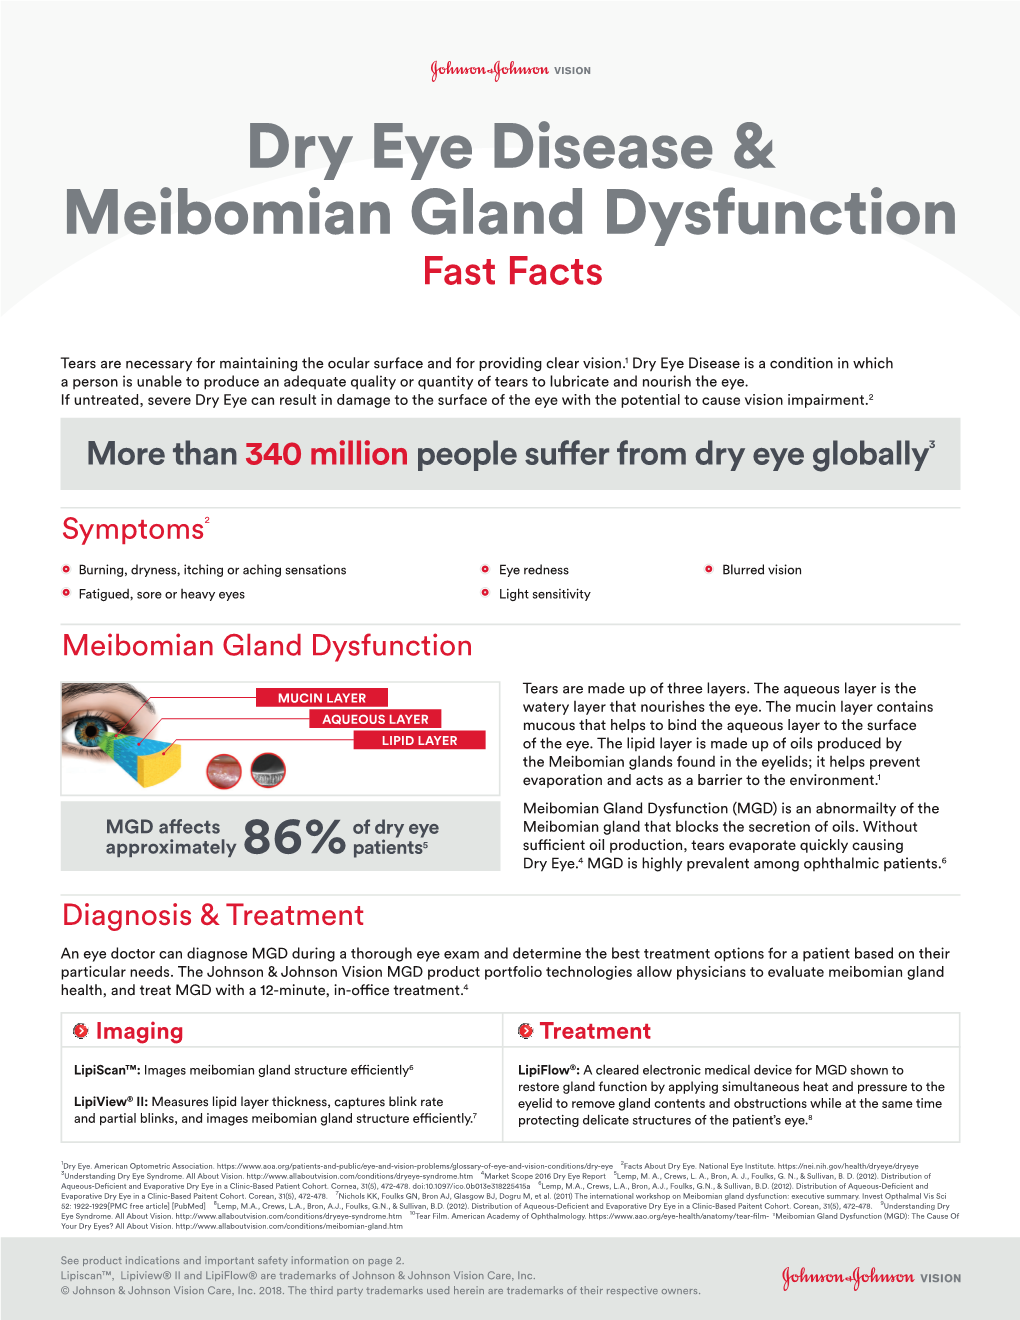 Dry Eye Disease & Meibomian Gland Dysfunction